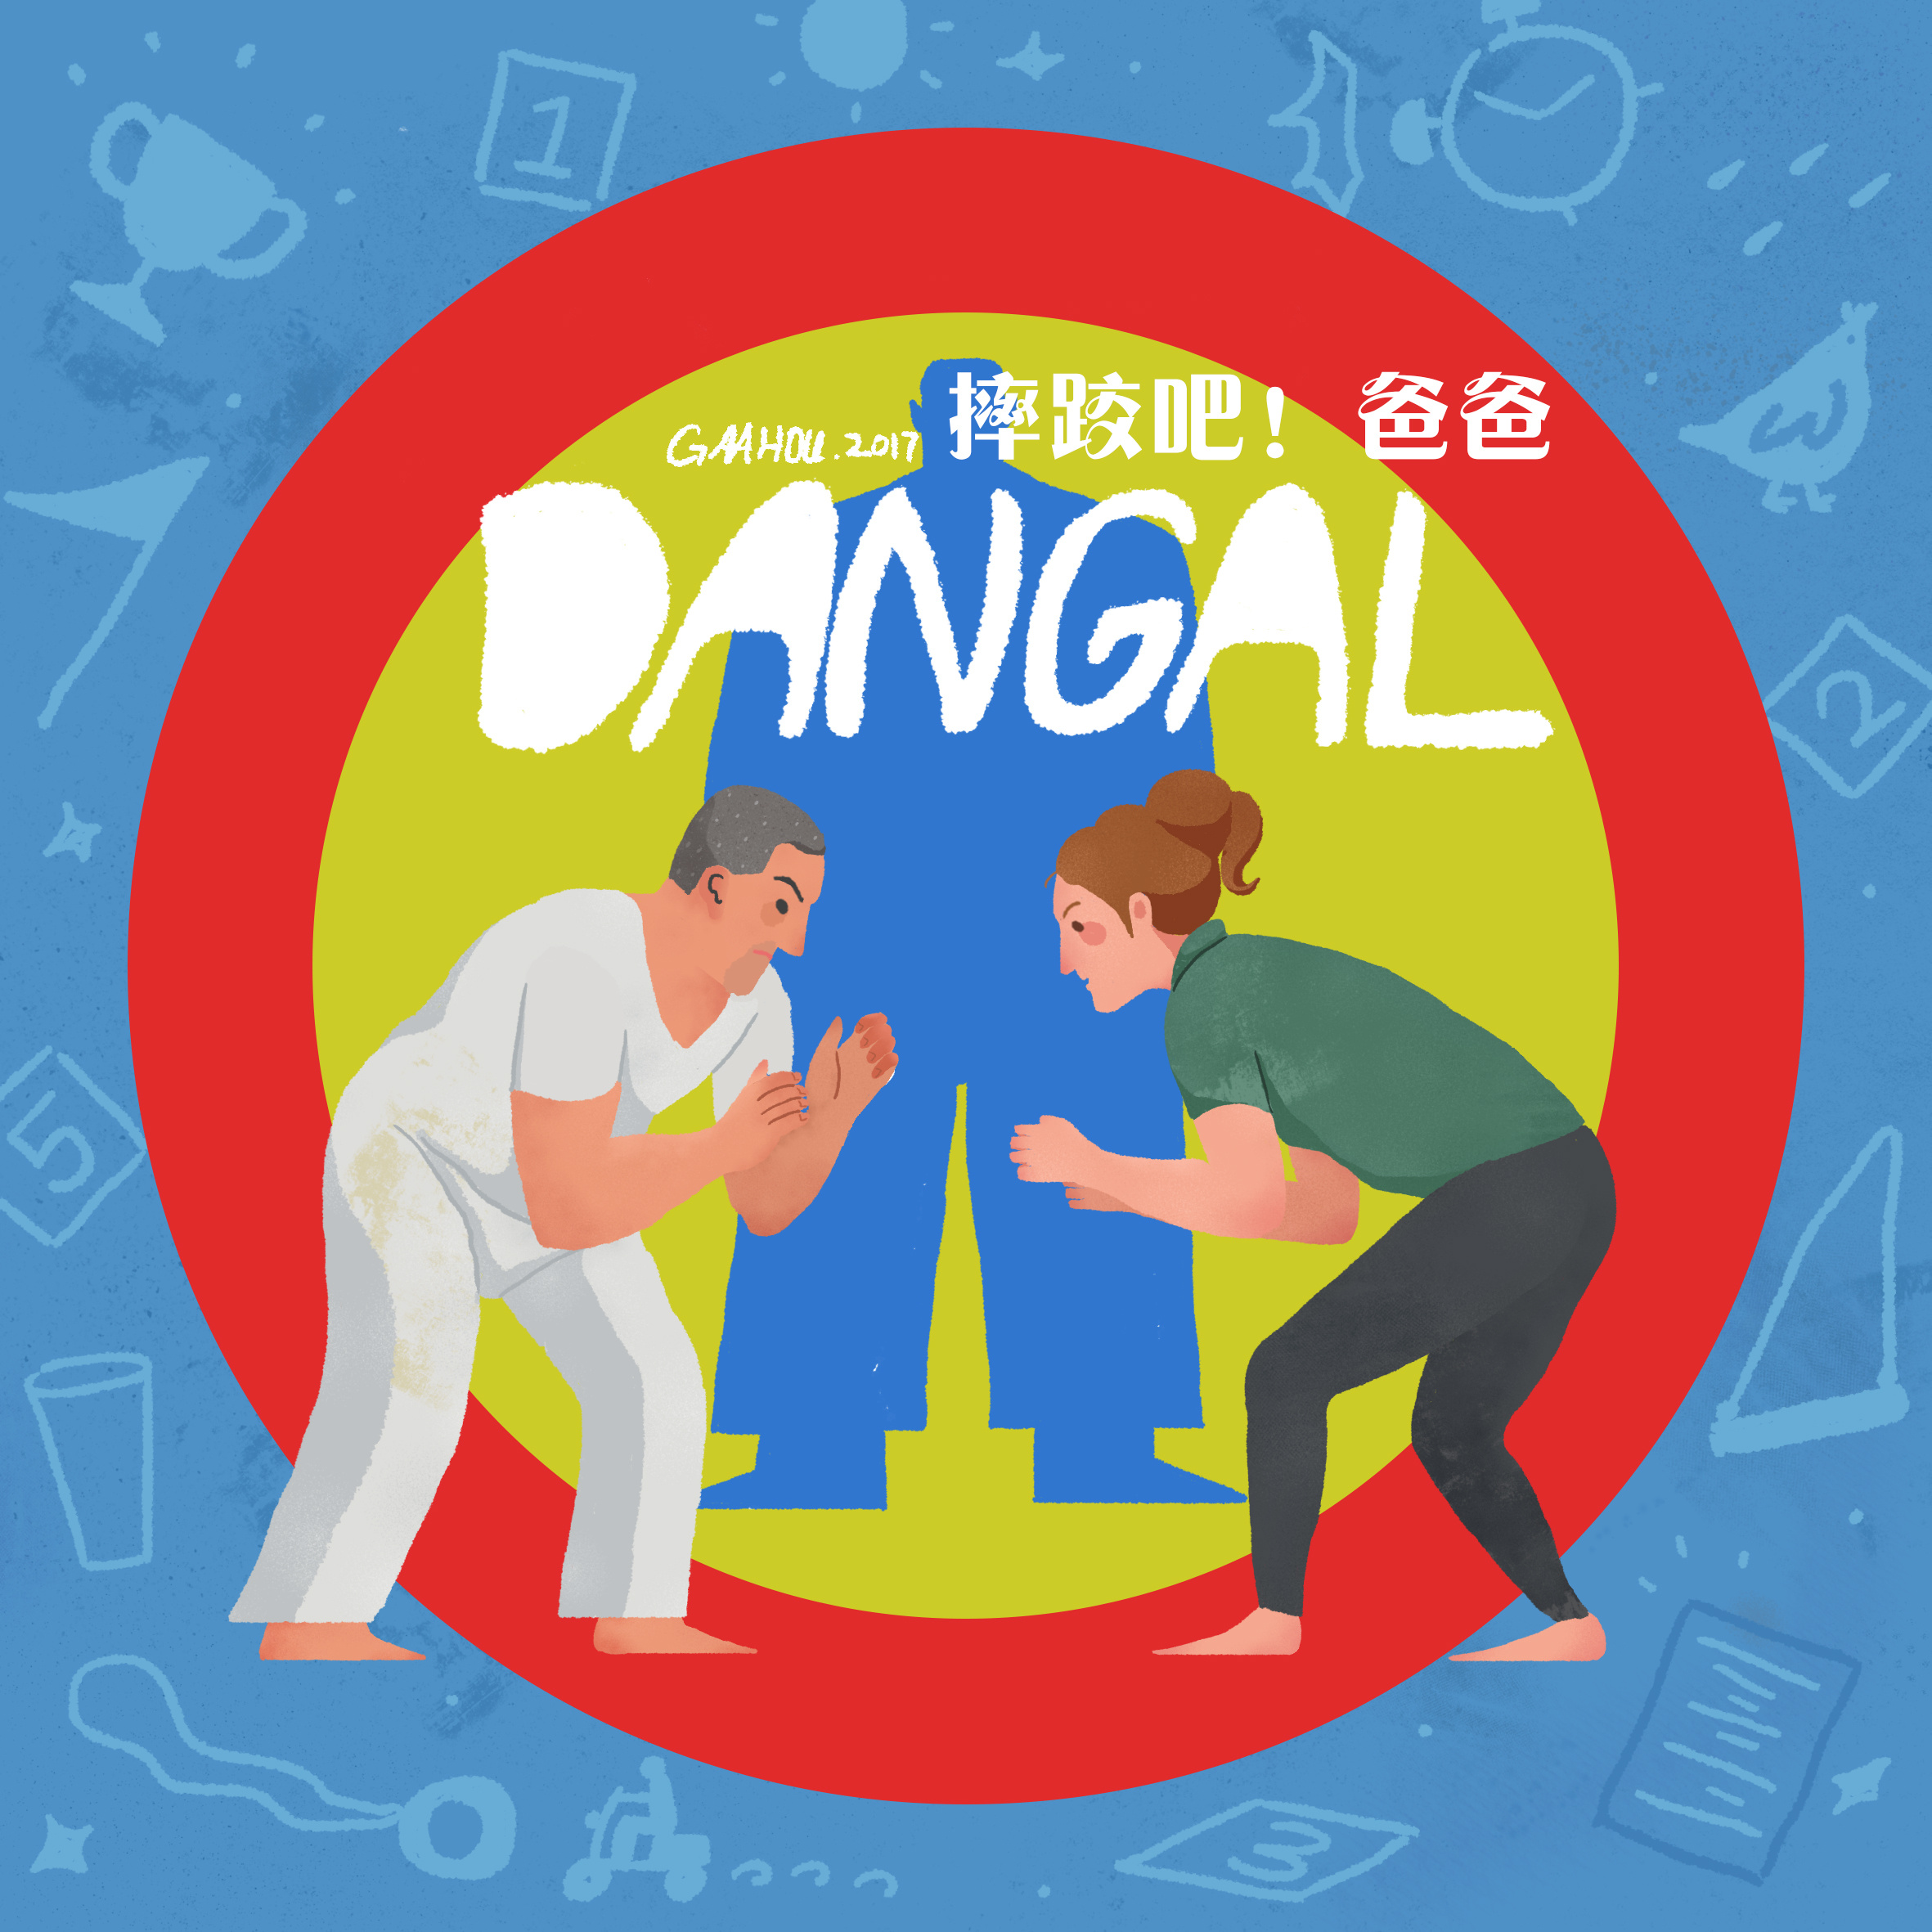 《摔跤吧!爸爸》征服中国观众 Indian film 'Dangal' becomes a talking point in China ...